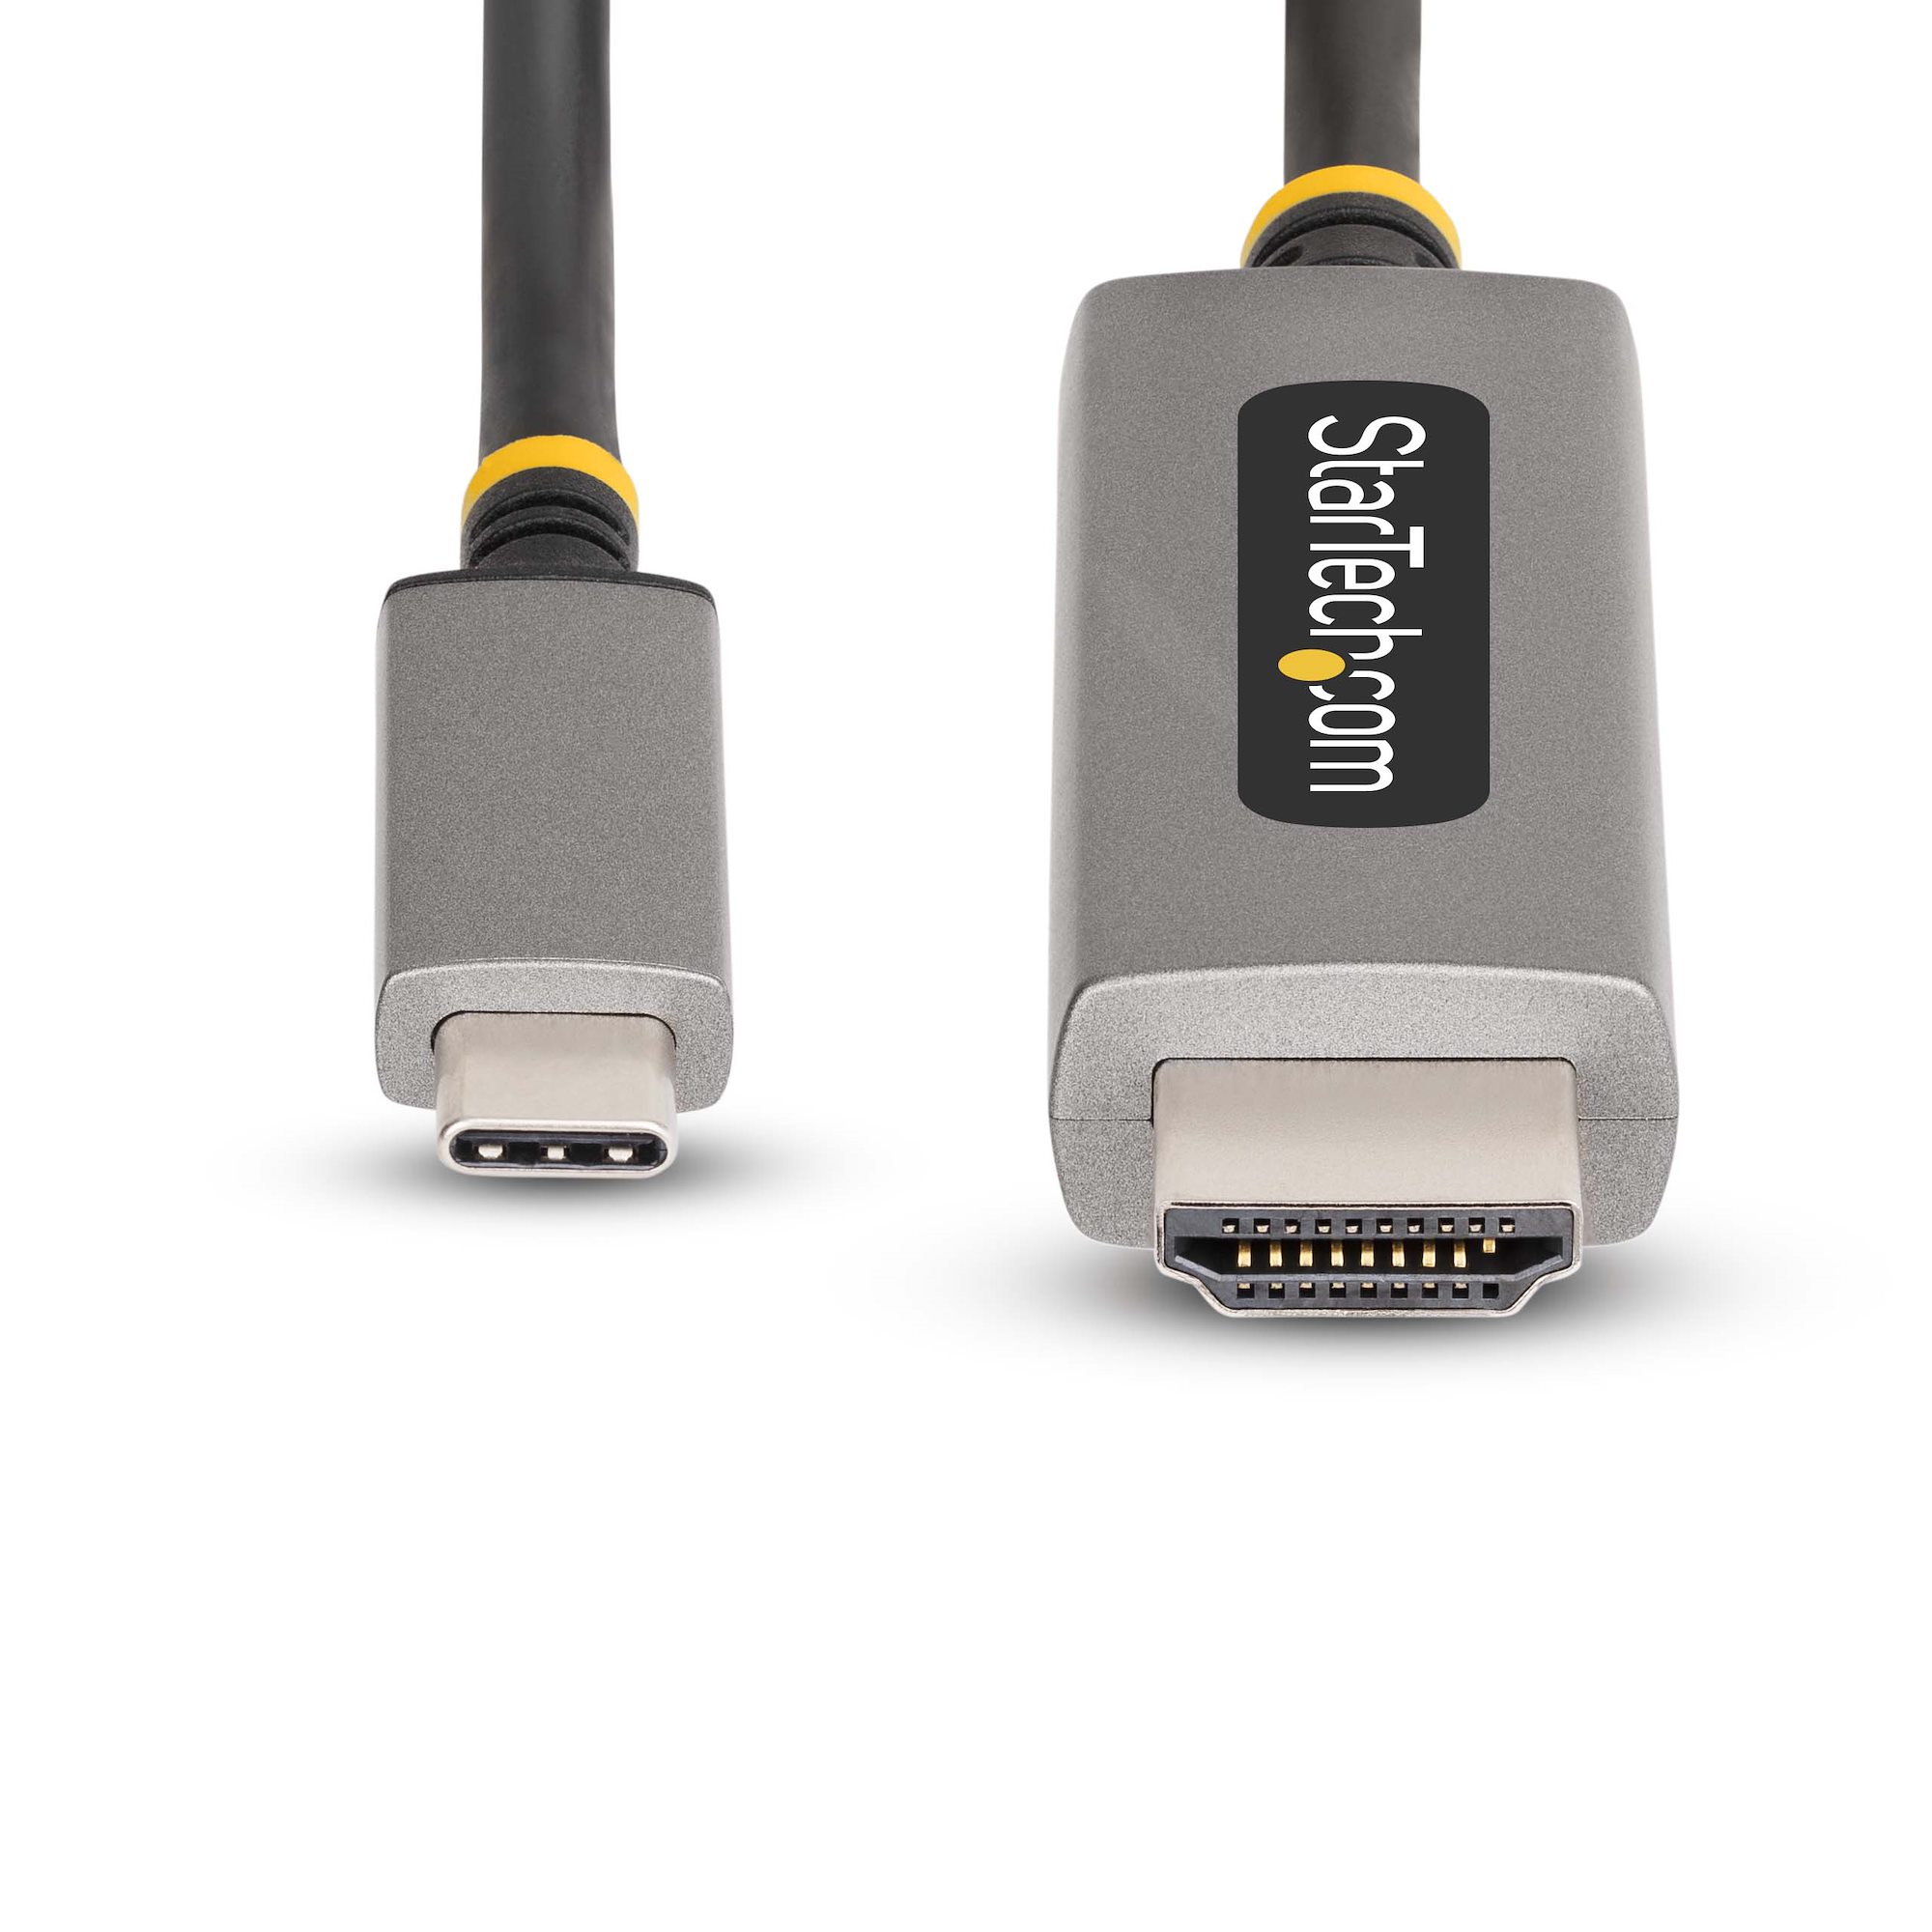 Adaptador USB-C a HDMI 2.1 (8K a 60 Hz)